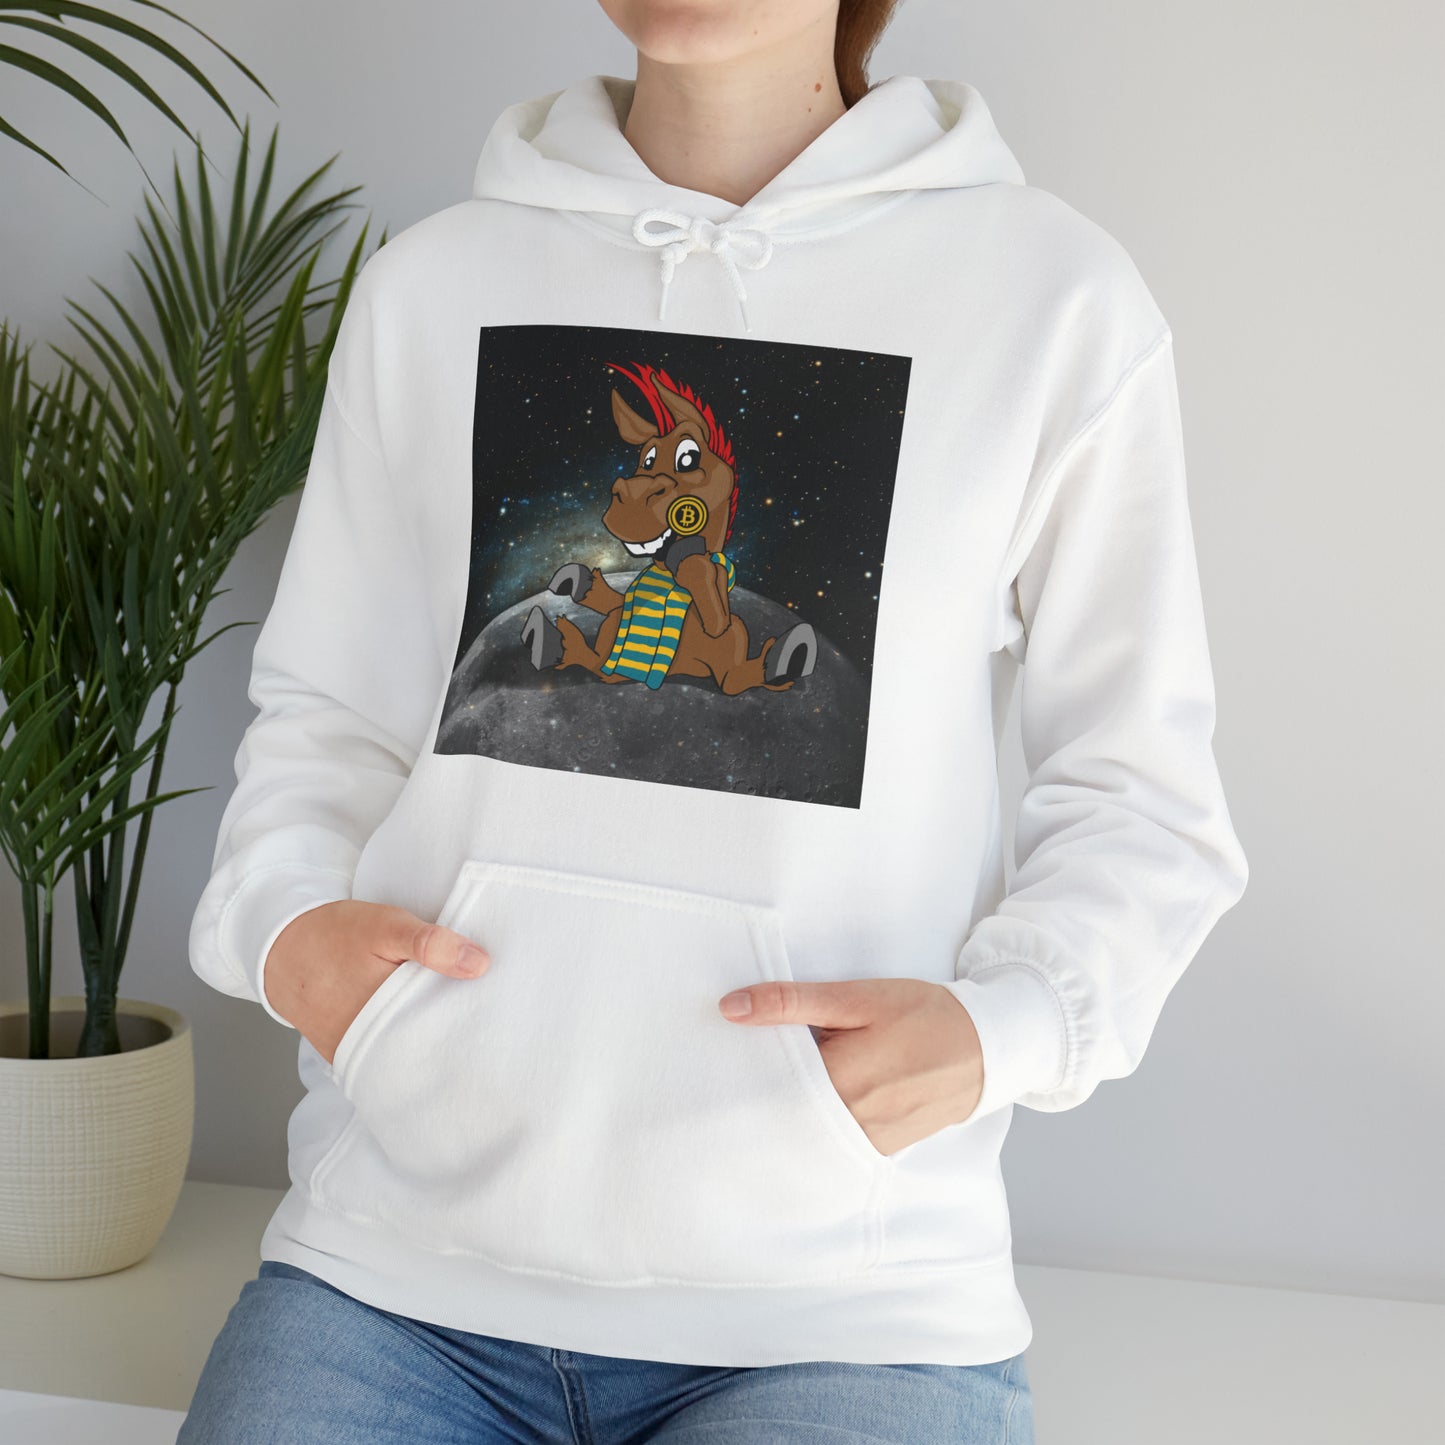 DeFi Space Donkeys #24 Unisex Heavy Blend™ Hooded Sweatshirt